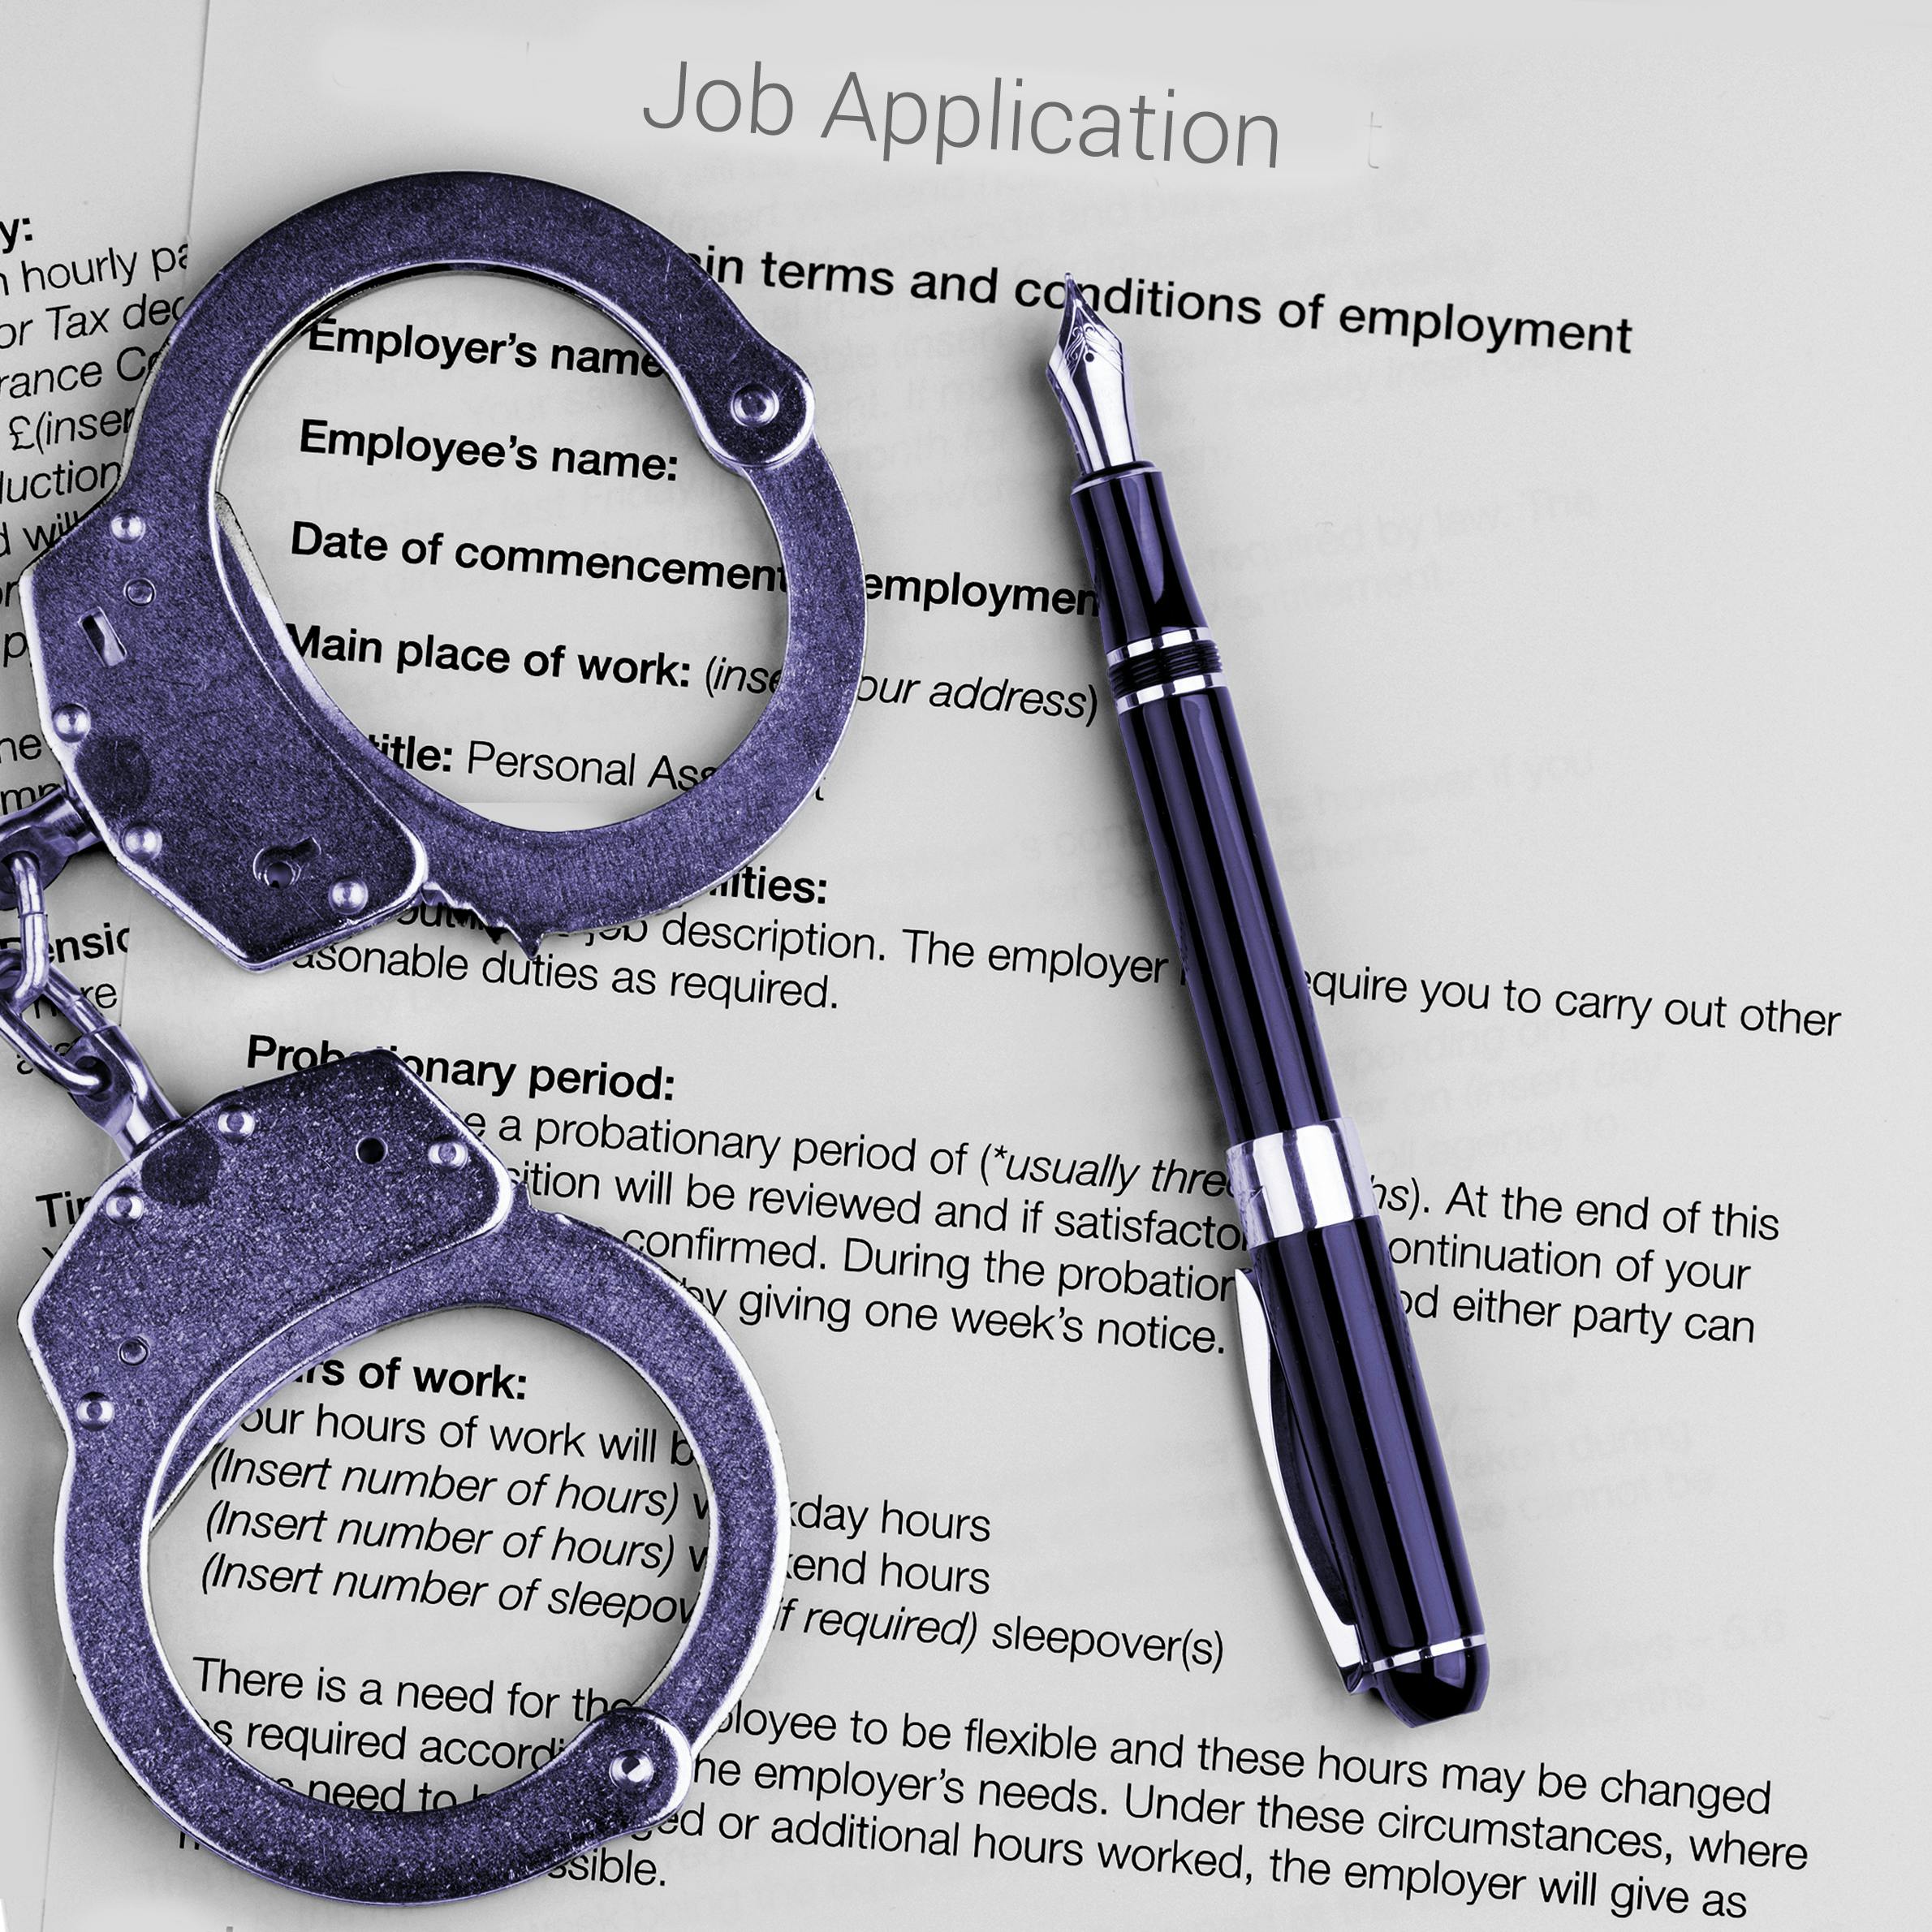 Ban the Box: Should We Banish the Criminal History Check Box from Job Applications?